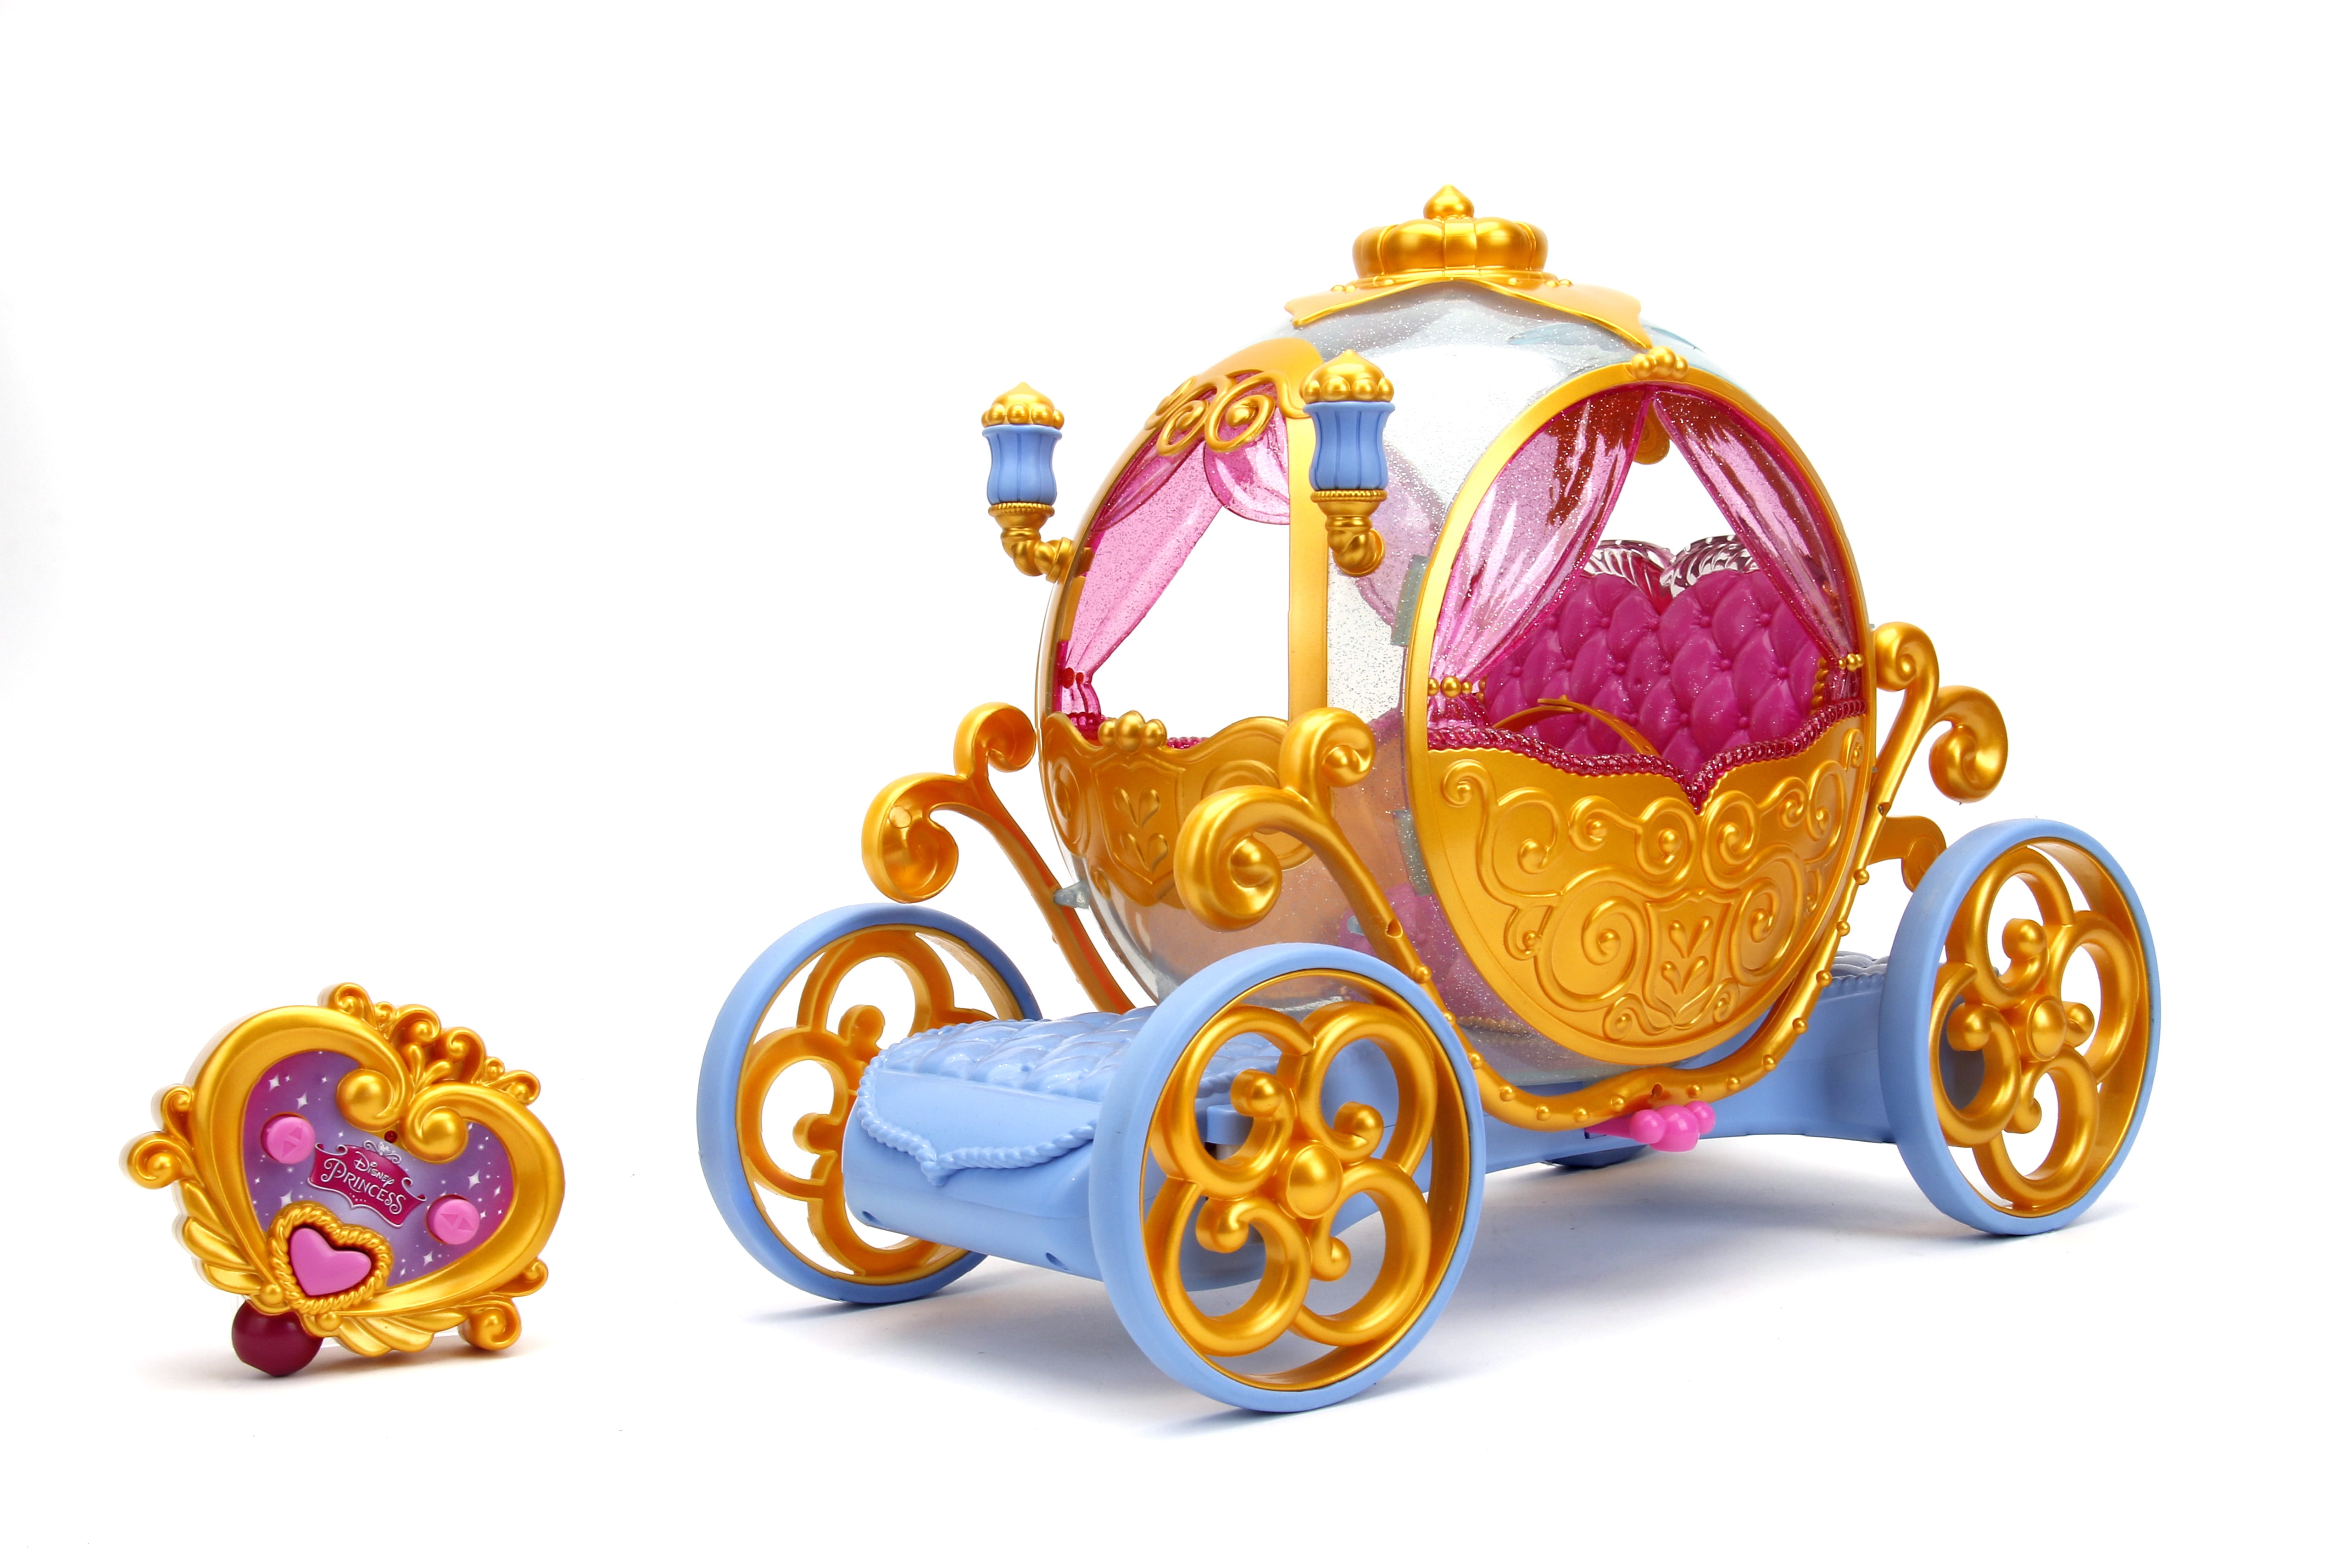 Disney Princess Hopper Ball - Disney Princess Toys - Funstra